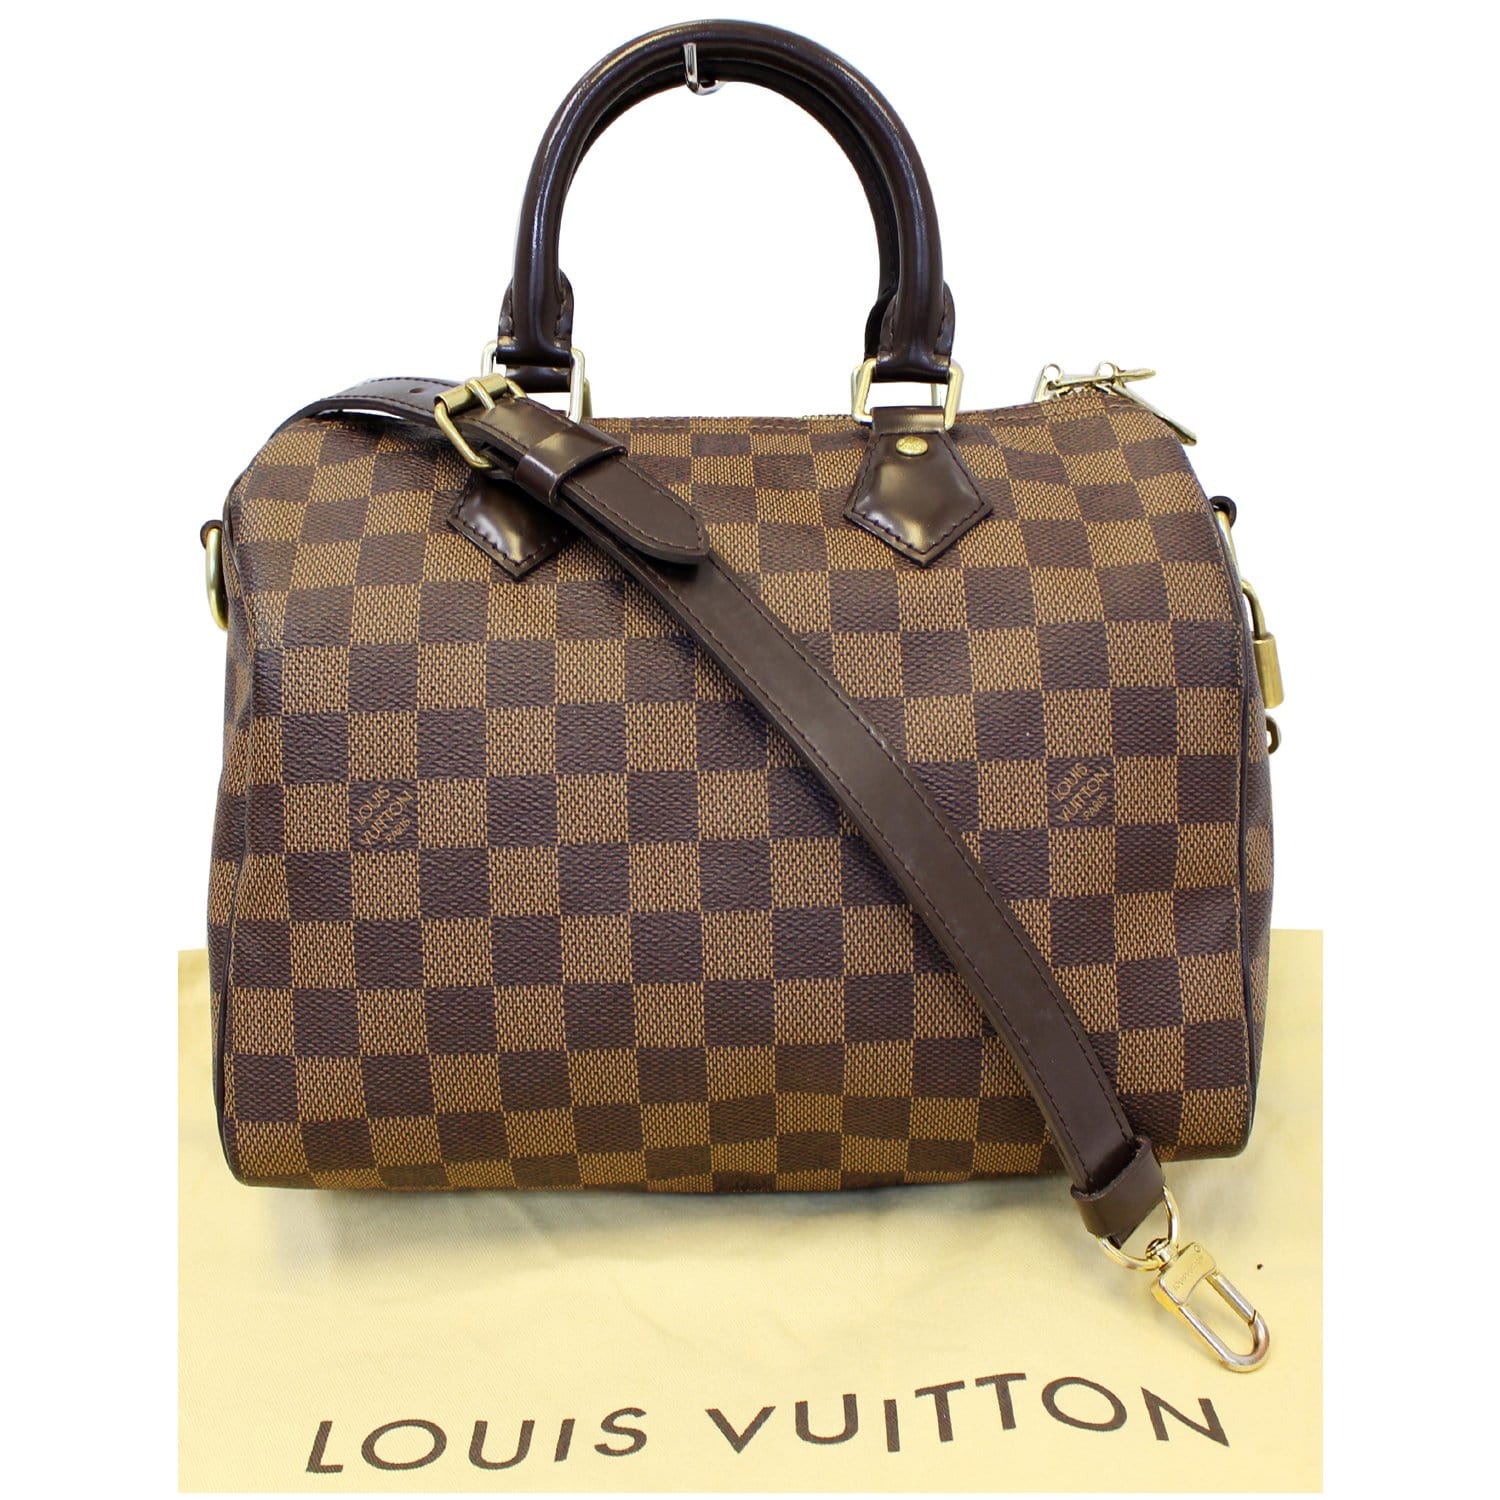 Louis Vuitton Speedy Bandouliere Damier Ebene 25 Brown - US